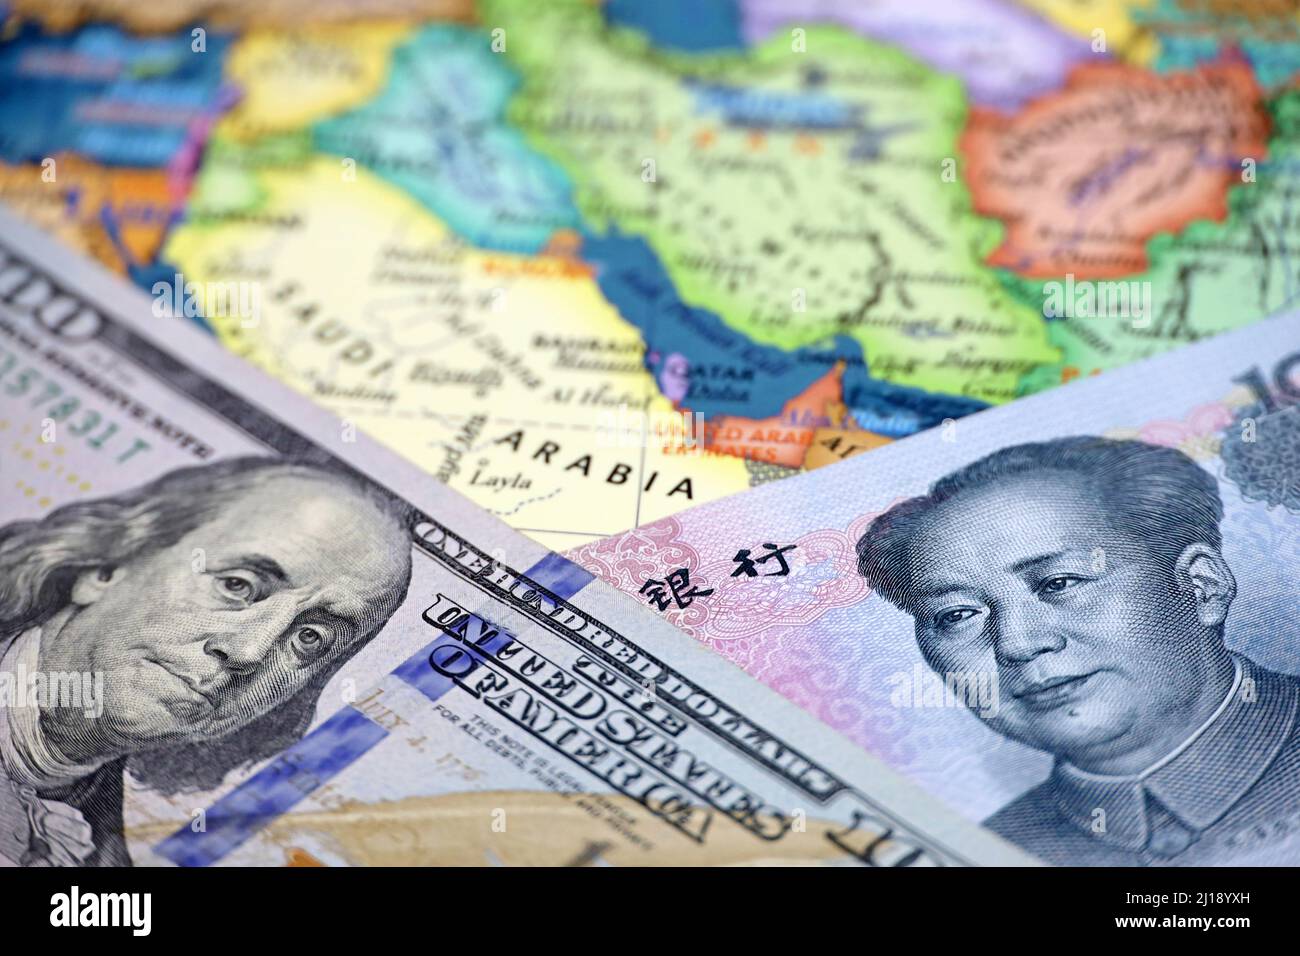 Yuan cinese e dollari americani sulla mappa dell'Arabia Saudita. Concetto di acquisto di petrolio, concorrenza economica tra Cina e Stati Uniti nei paesi del Golfo Persico Foto Stock